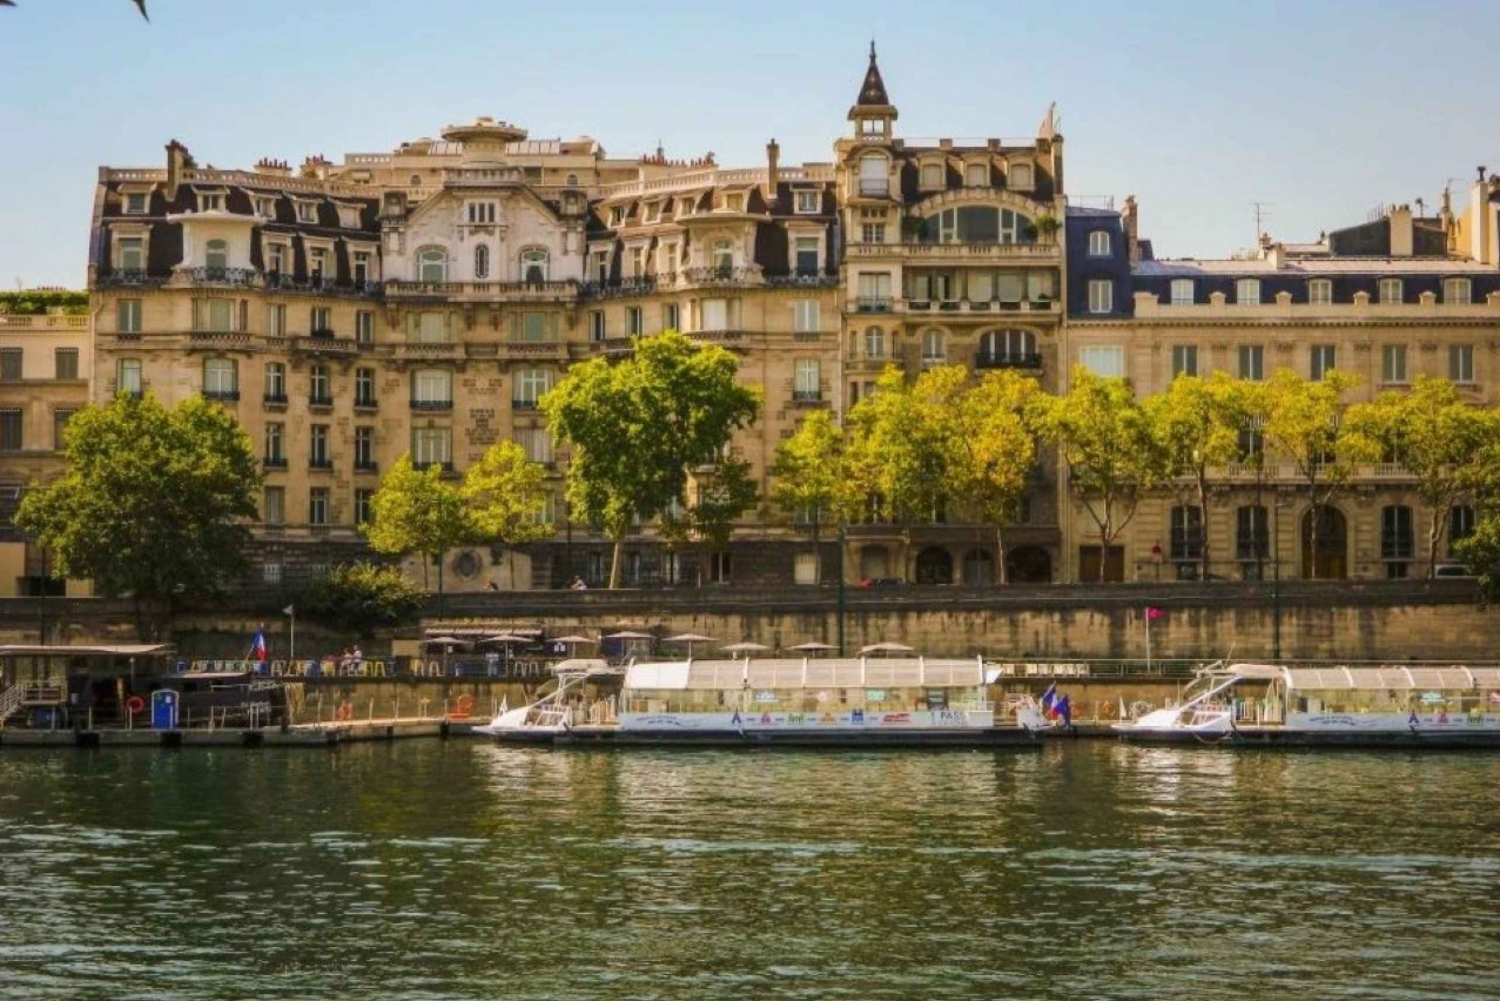 Paris: Quai Branly Museum Ticket & Optional Seine Cruise